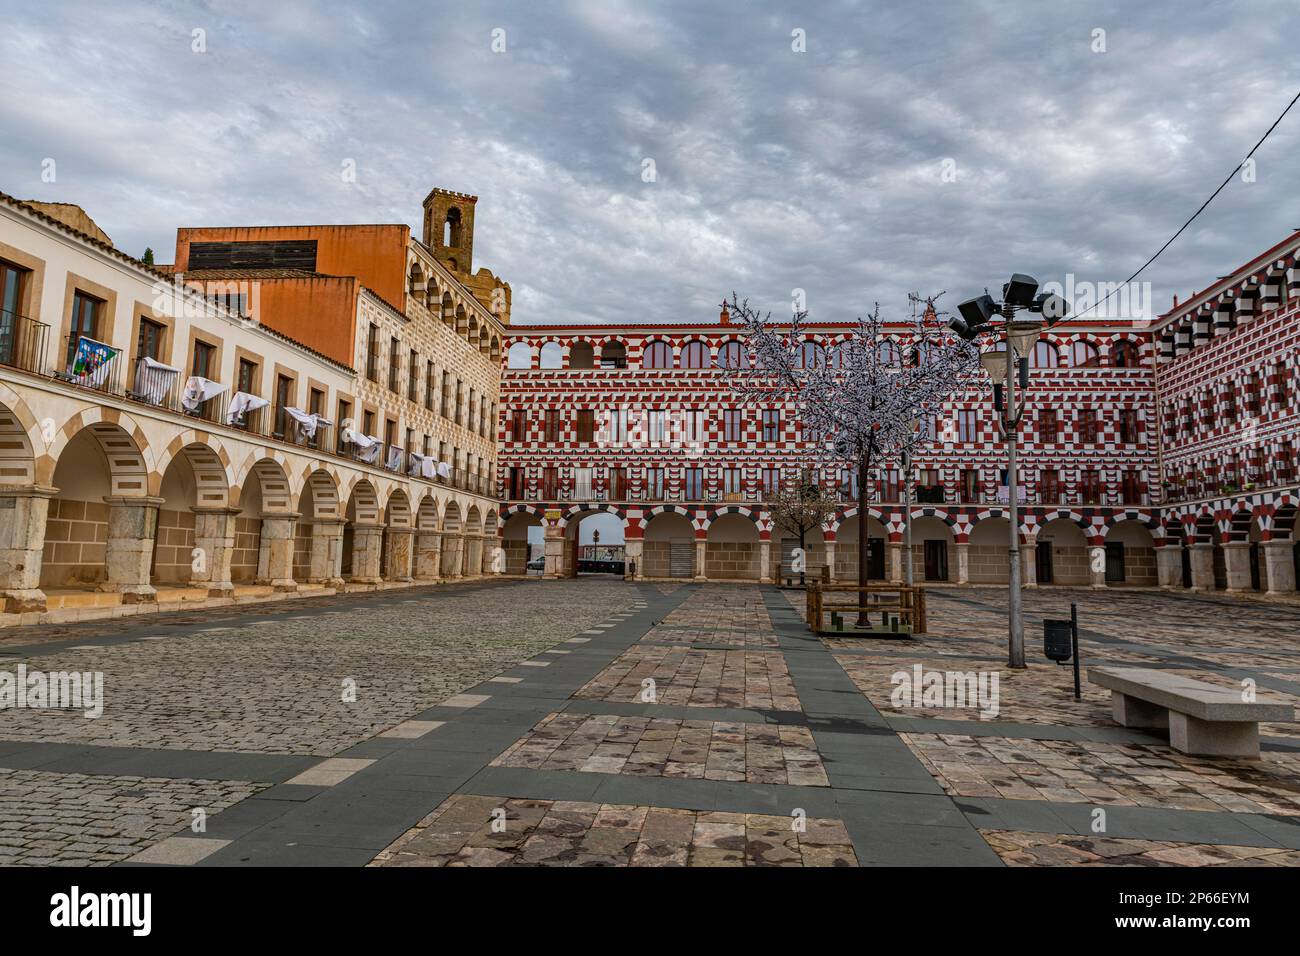 Plaza Alta, Badajoz, Extremadura, Spain, Europe Stock Photo